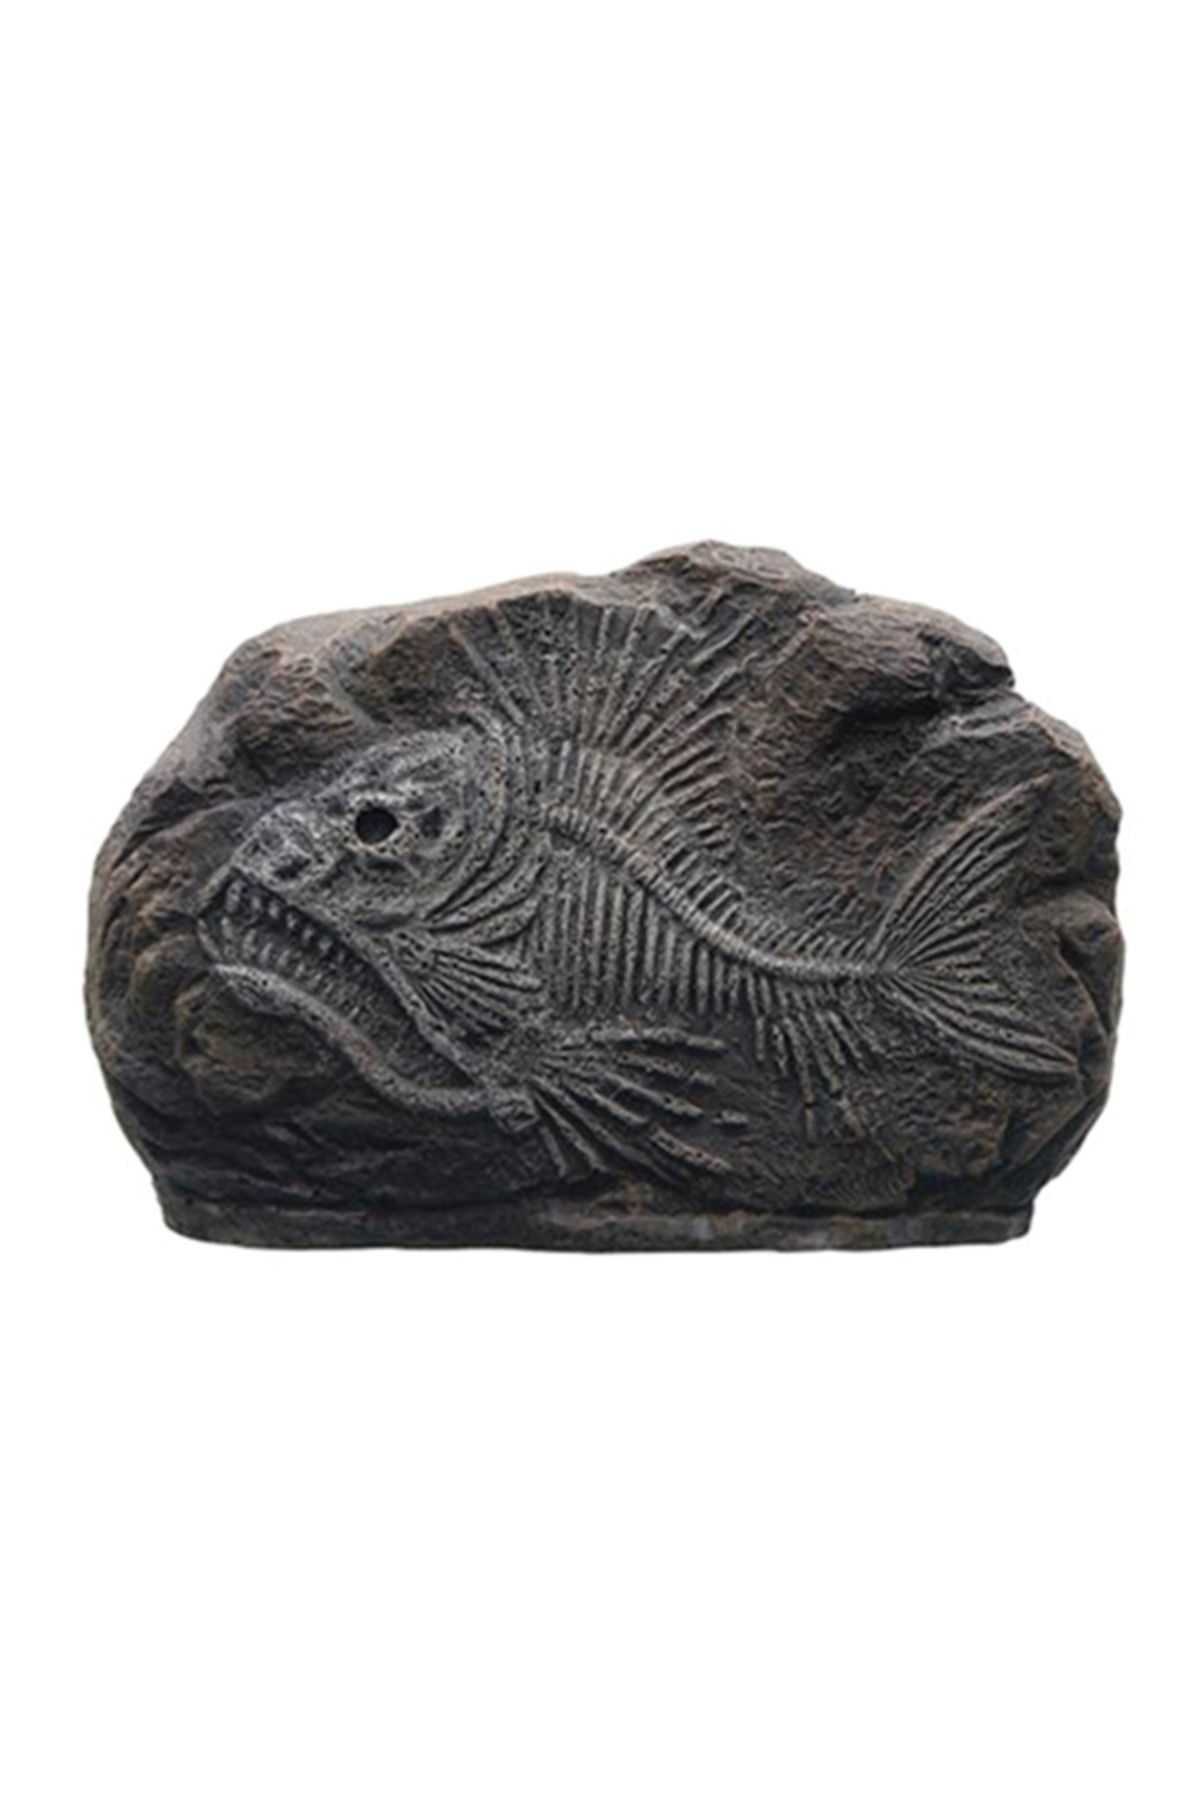 Marina Dekoratif Fosil Tiger Fish 10,2x3x7cm